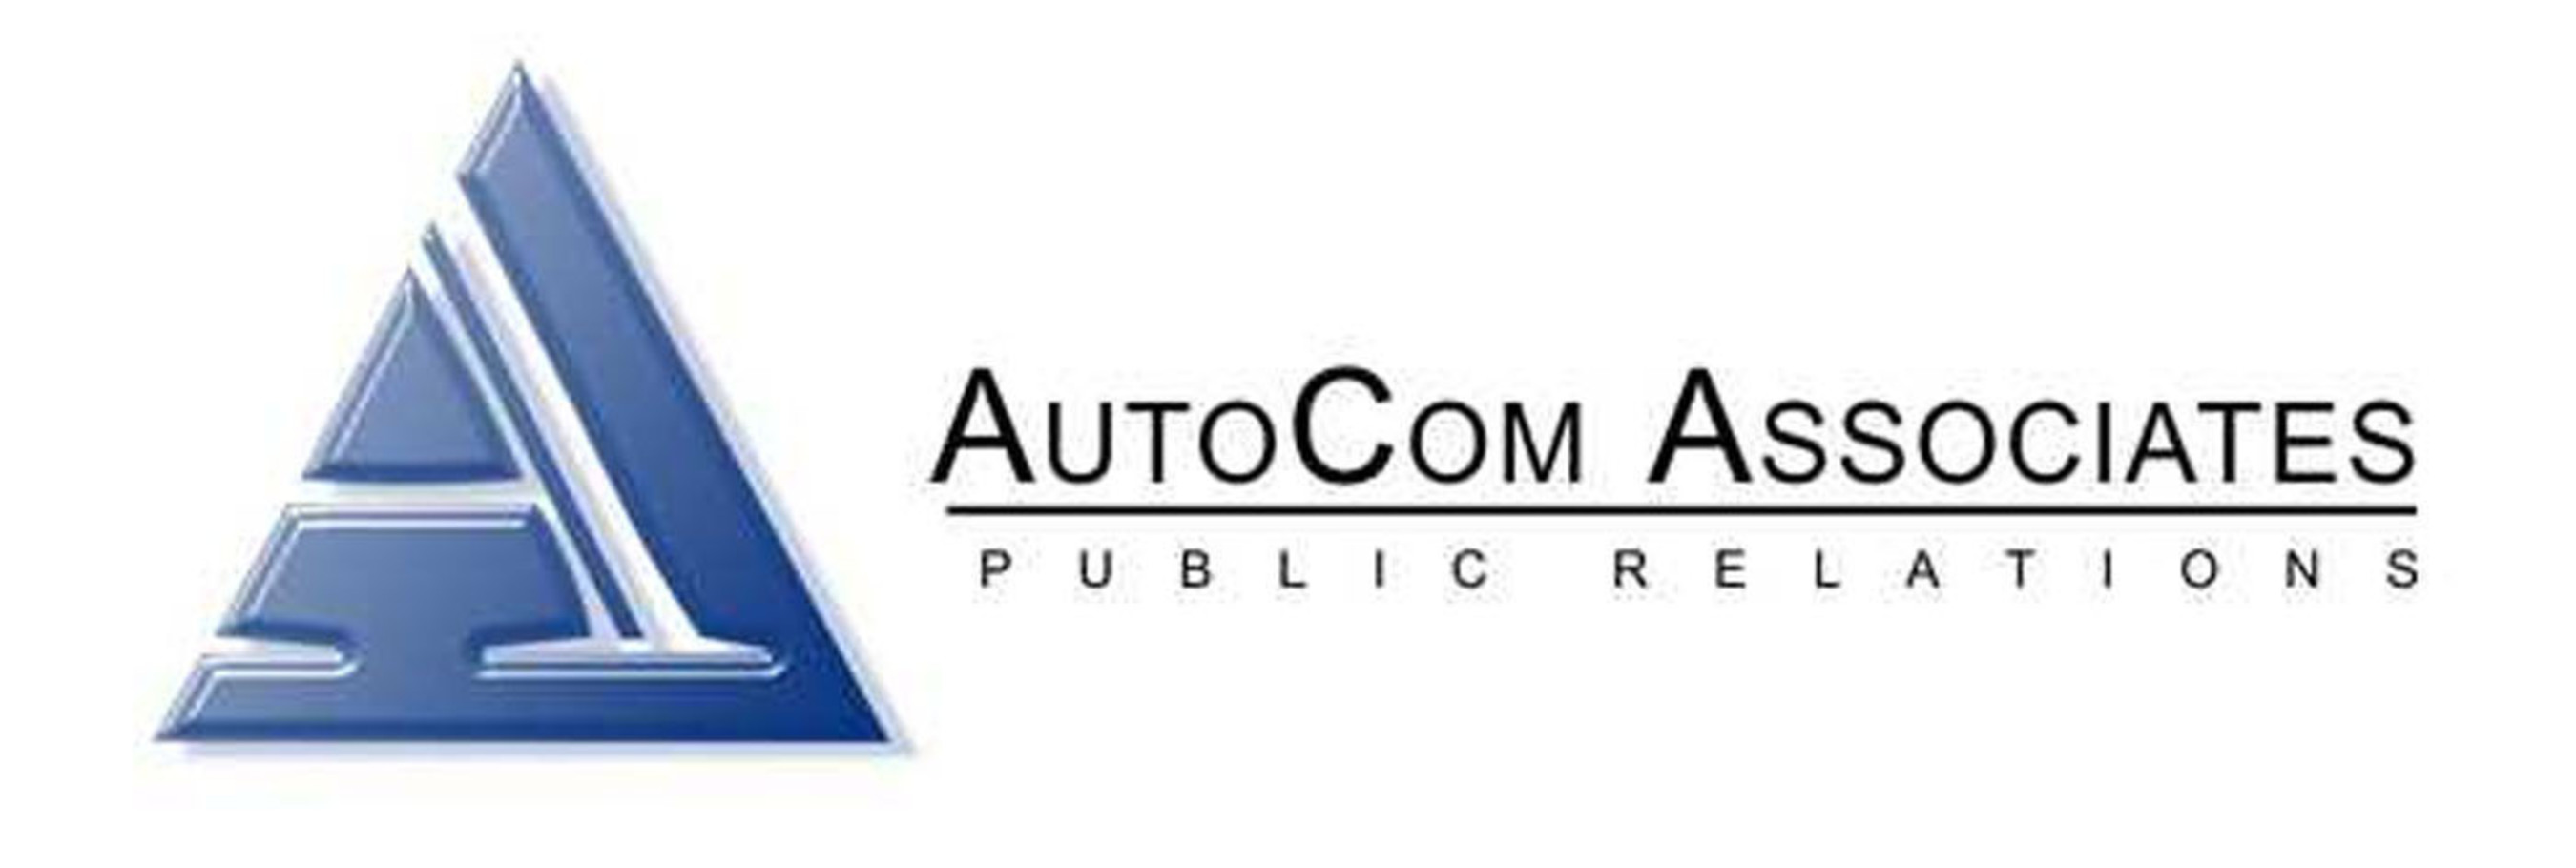 AutoCom Associates.